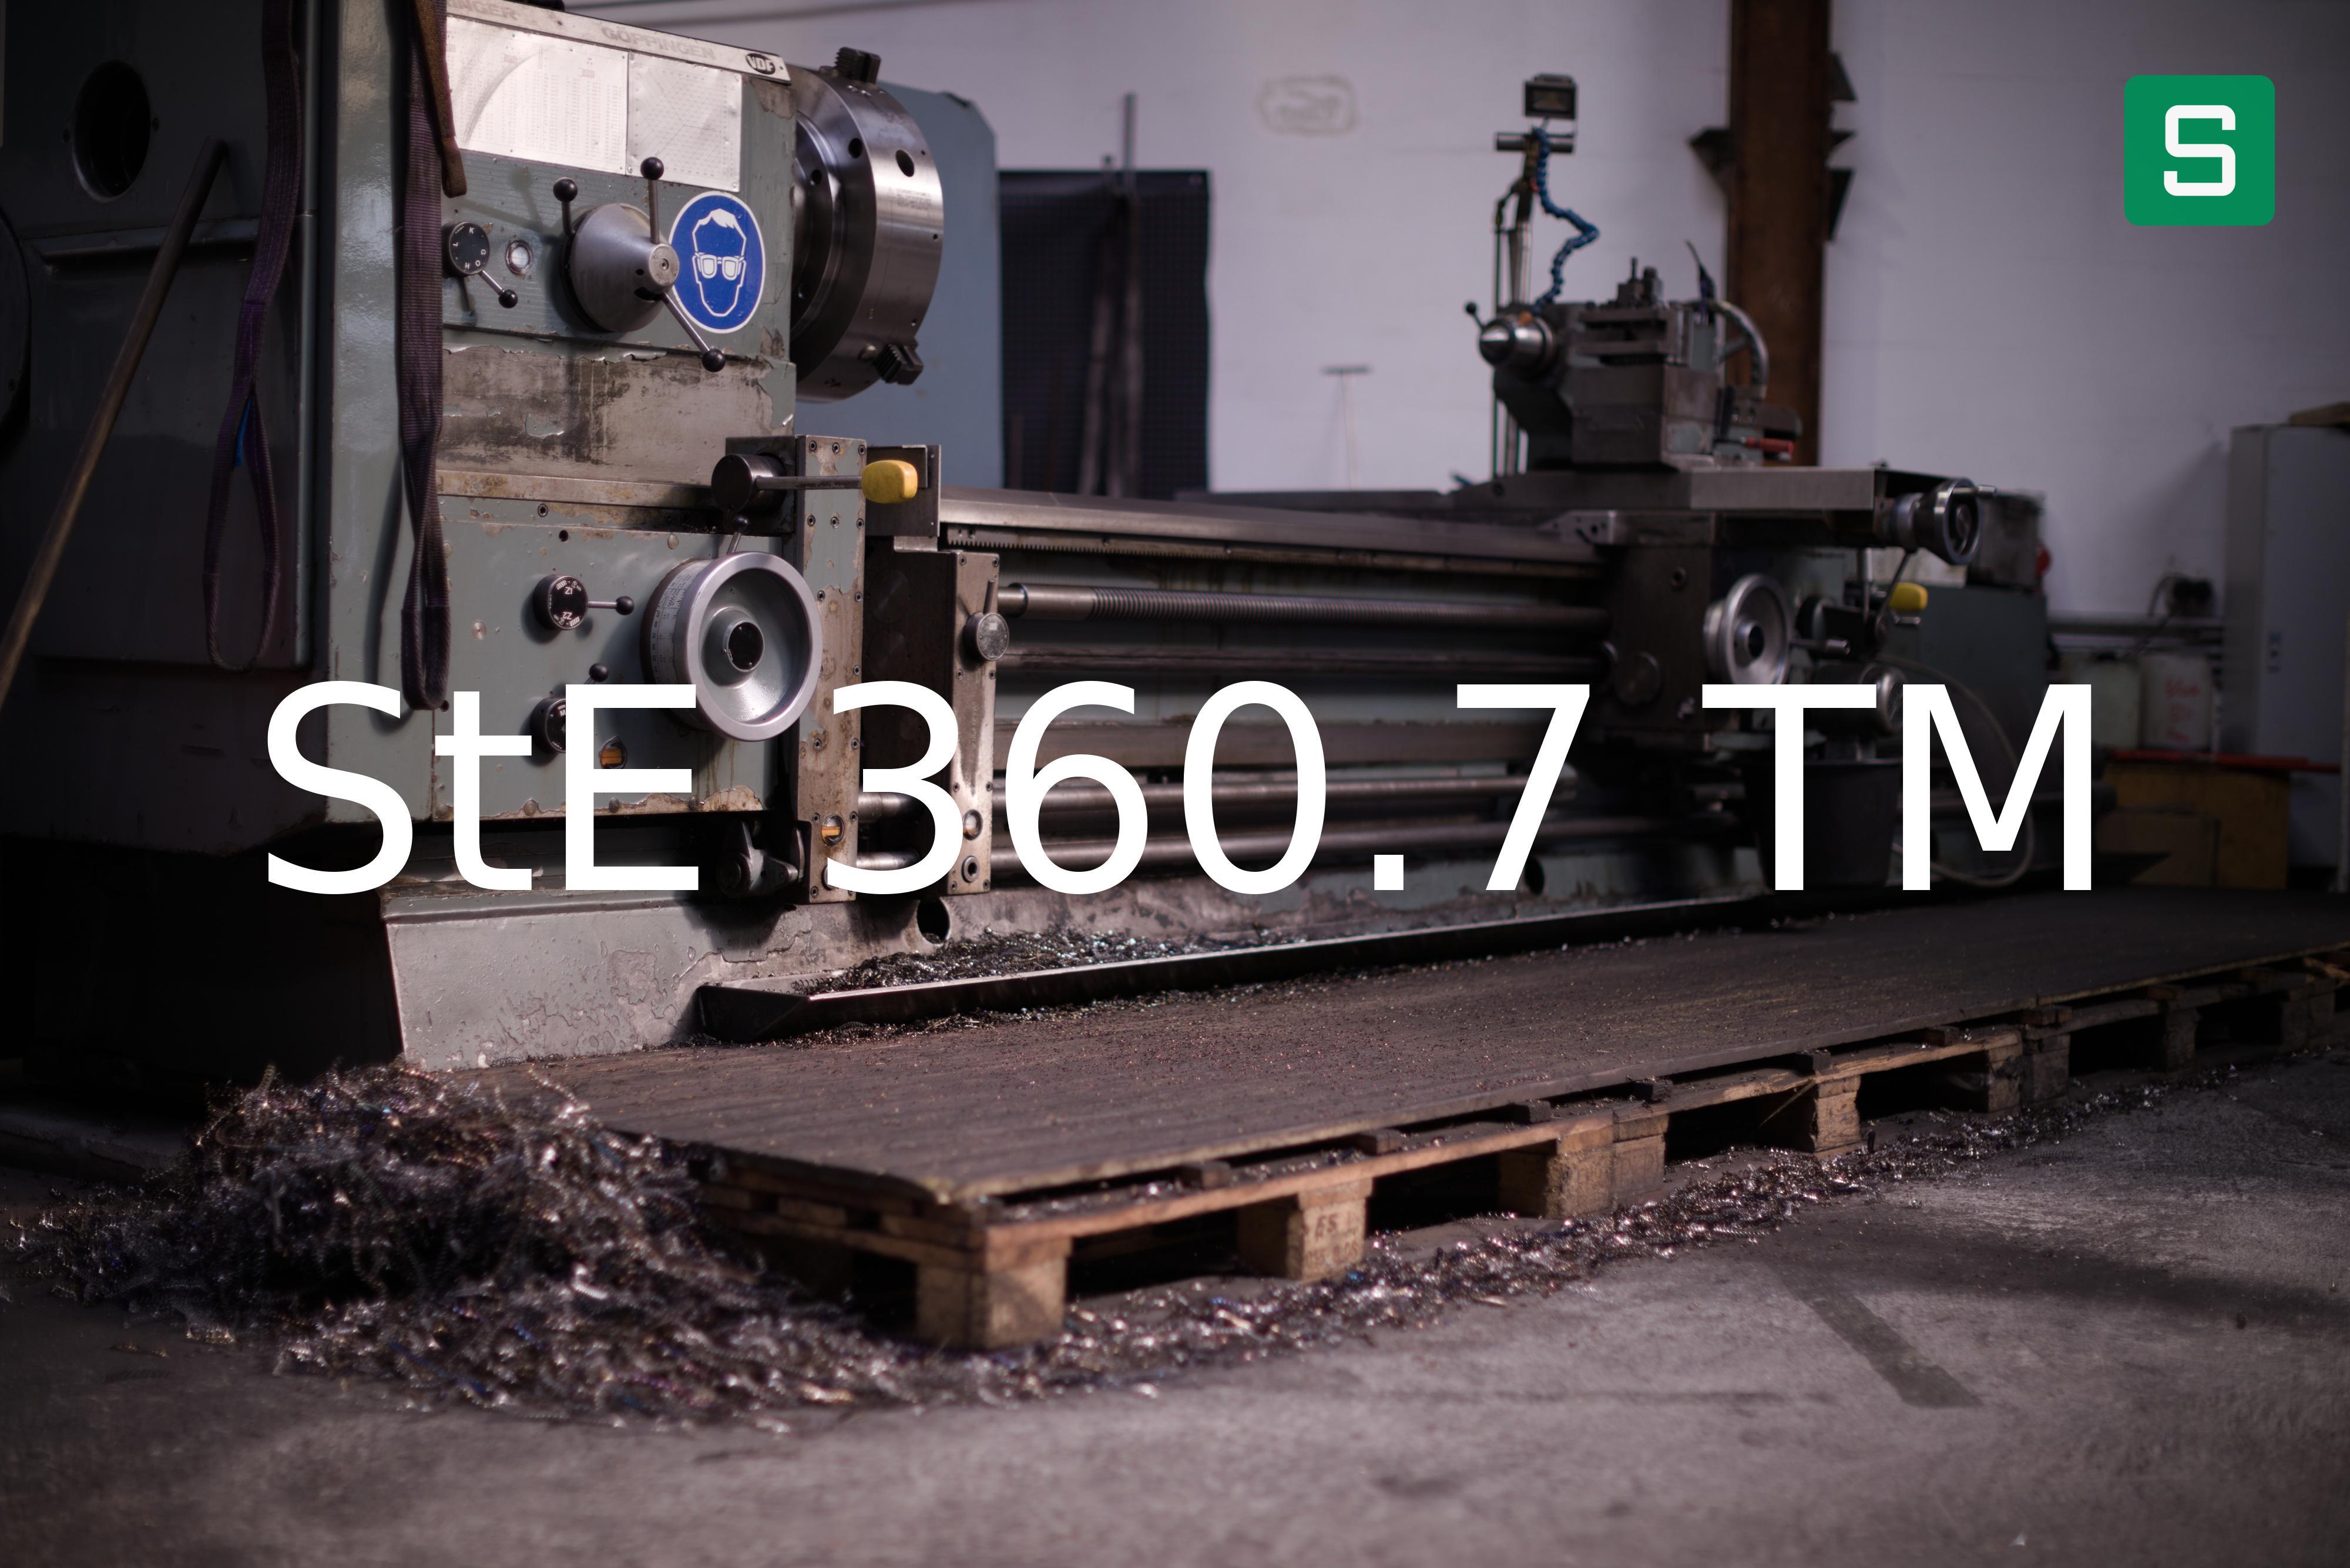 Steel Material: StE 360.7 TM